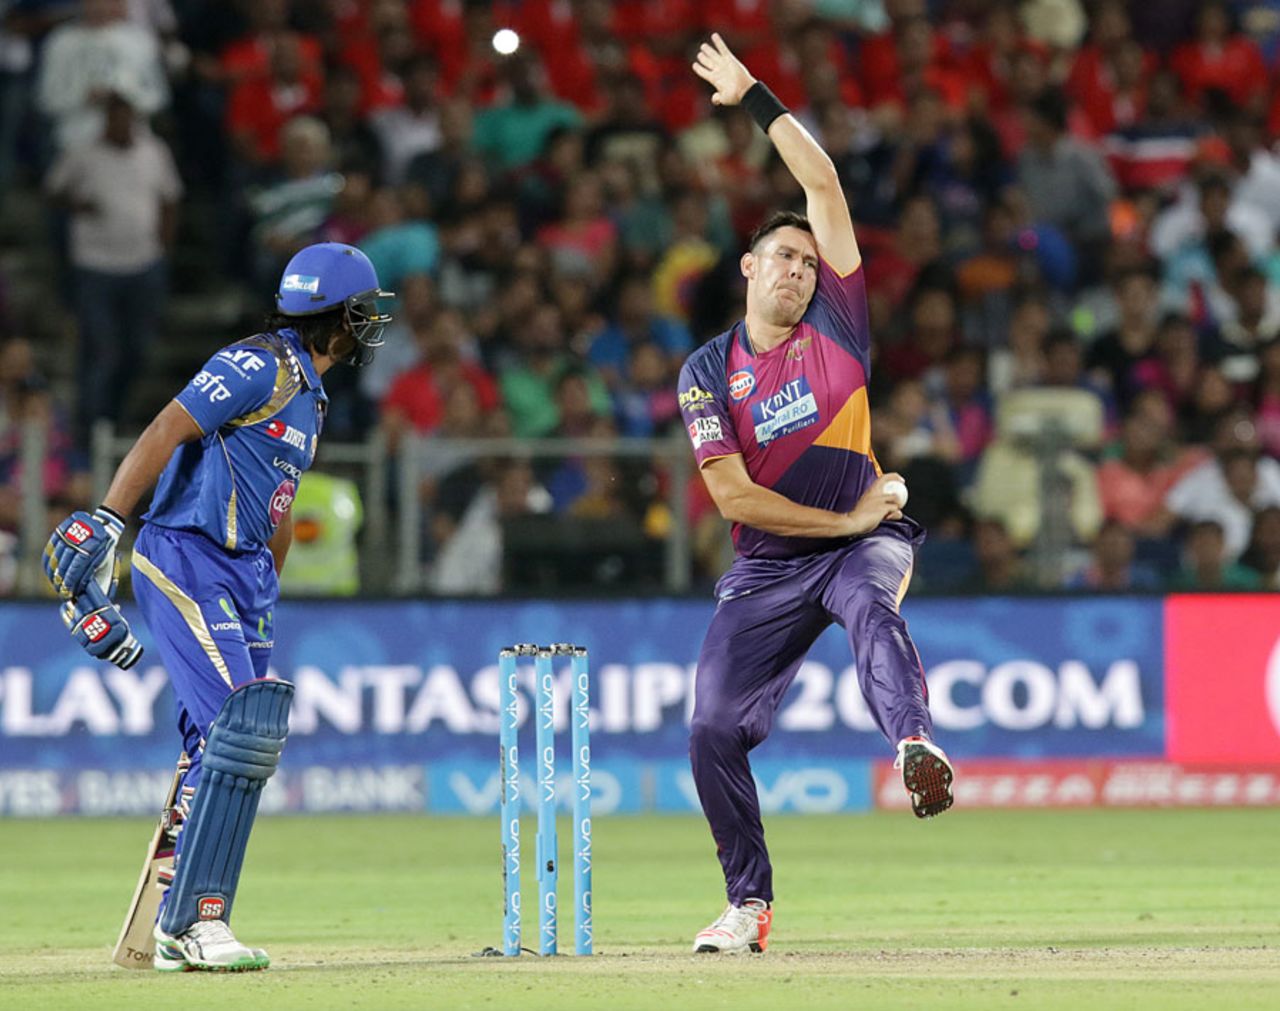 Scott Boland bowls on his IPL debut, Rising Pune Supergiants v Mumbai Indians, IPL 2016, Pune, May 1, 2016